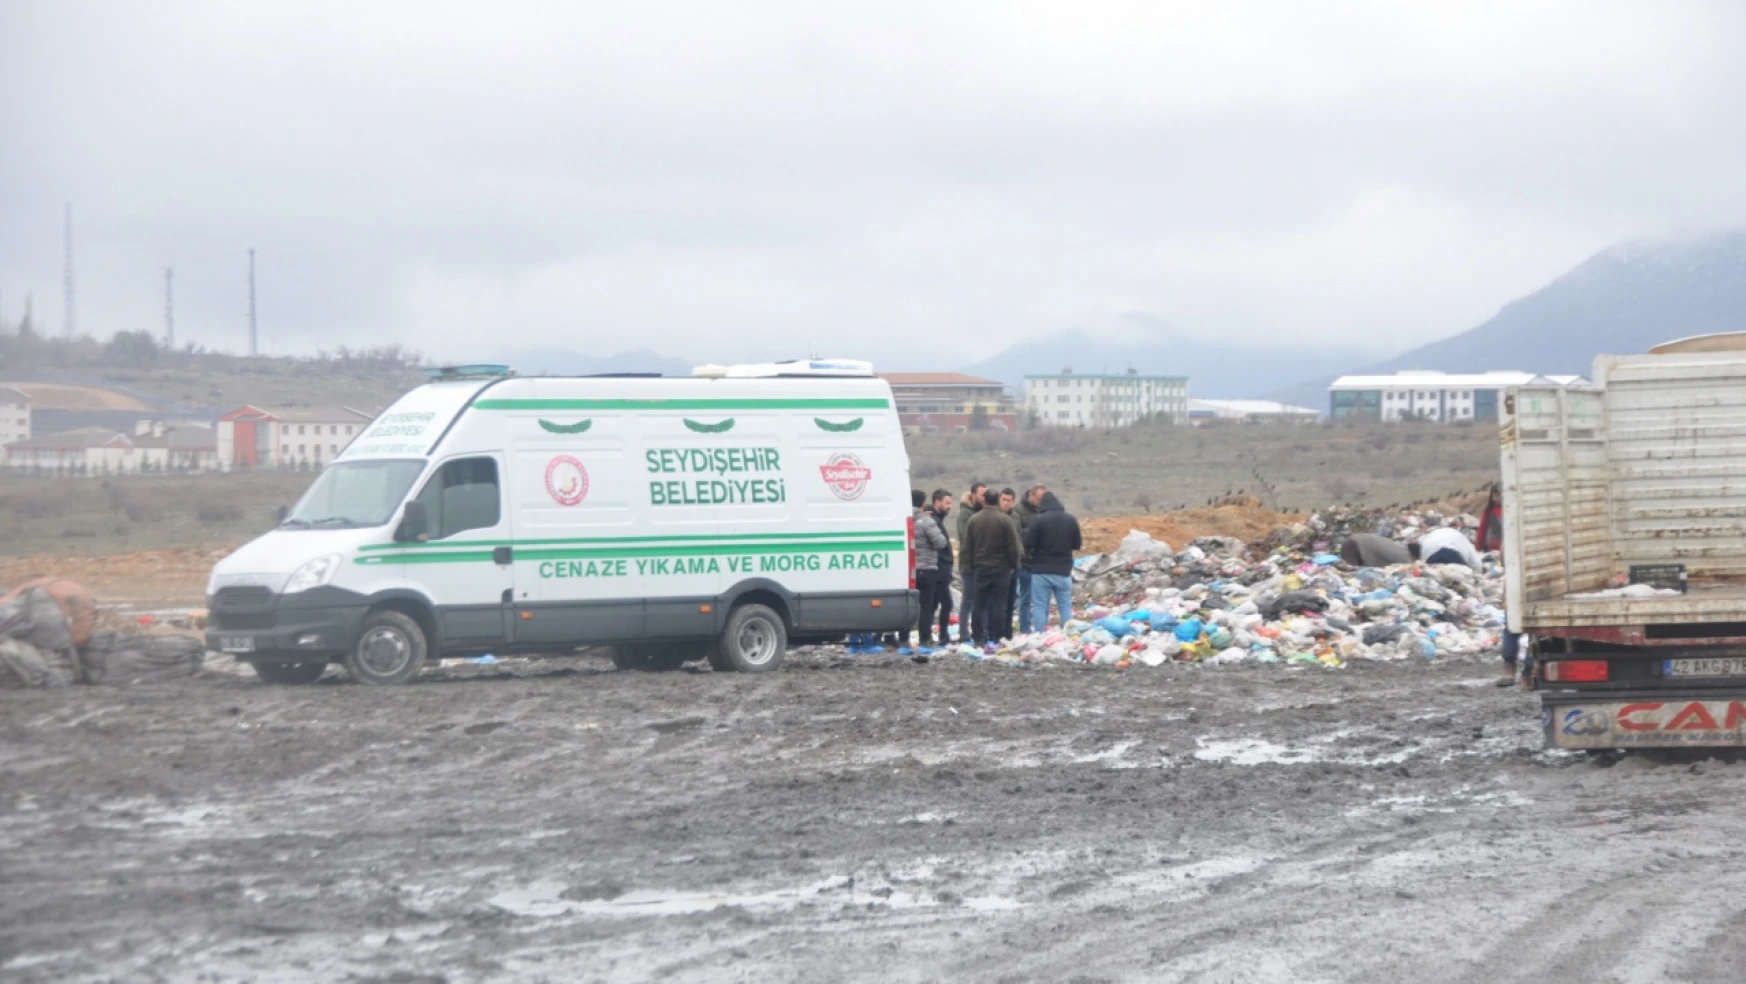 Konya'nın bir ilçesinde çöplükte kız bebek cesedi bulundu